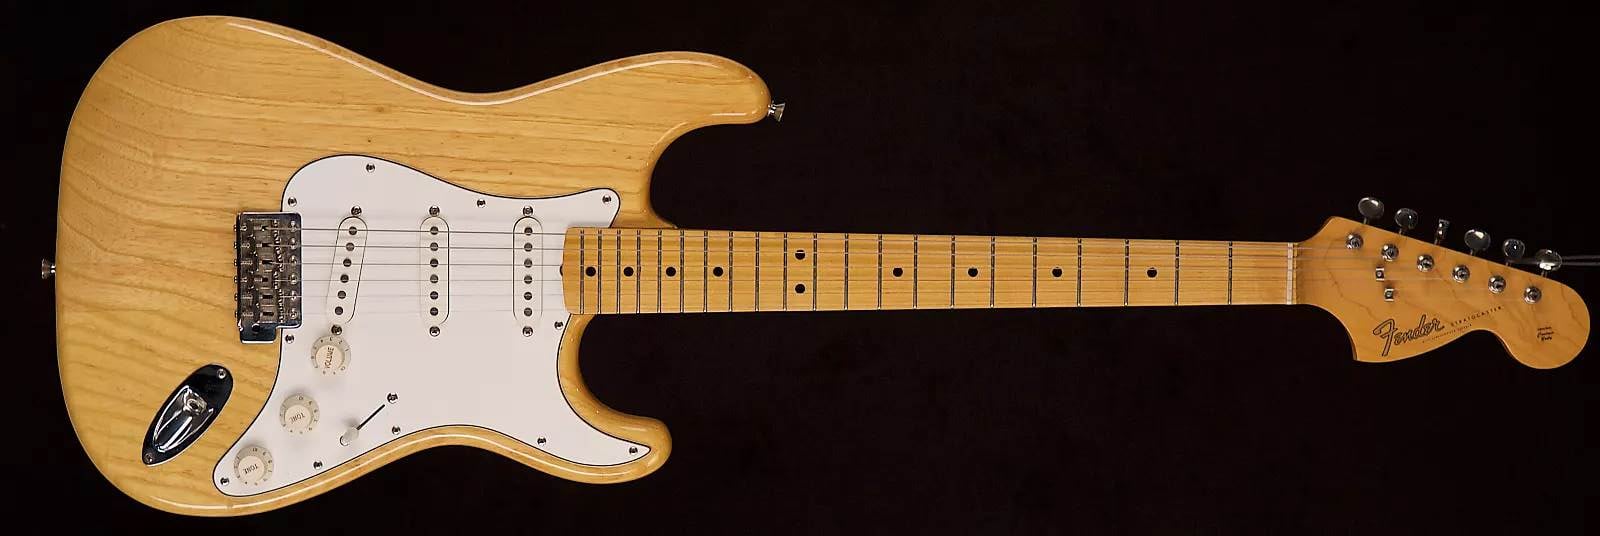 MIJ '68 Stratocaster 